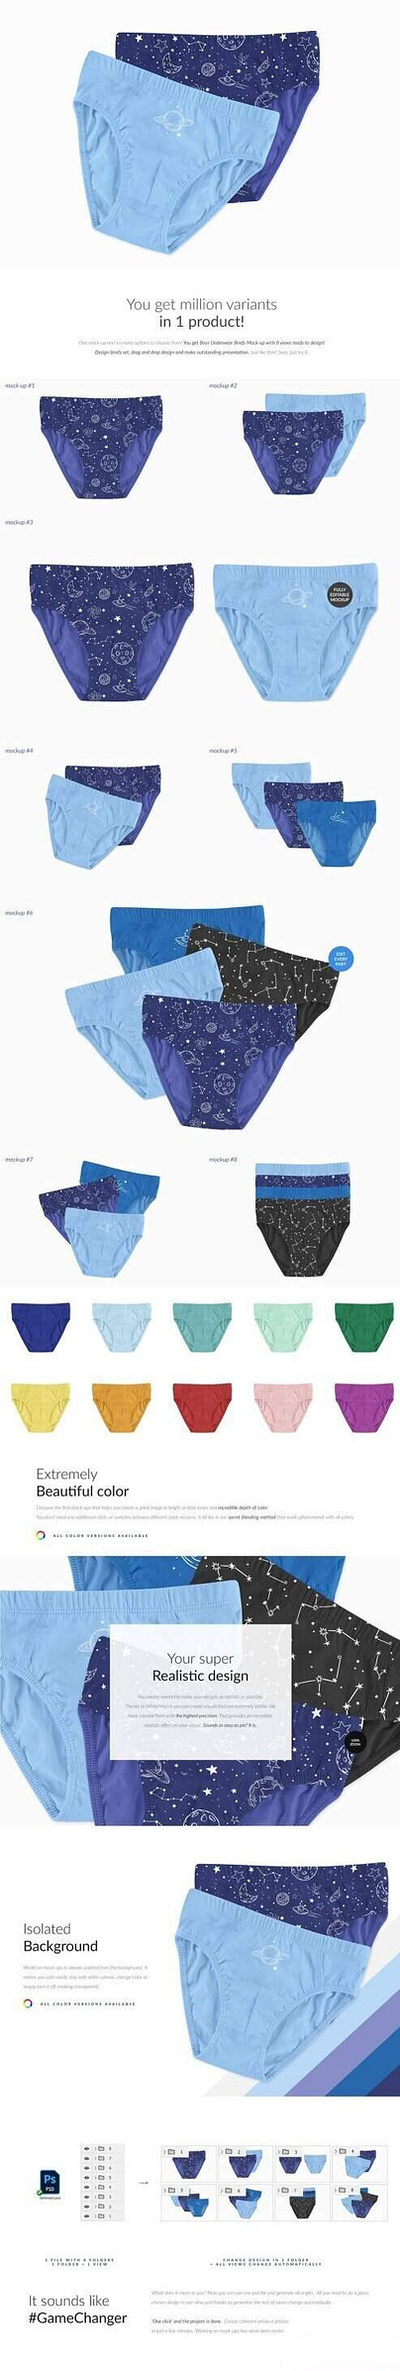 Boys Underwear Briefs 8x Mock-ups brand branding design graphic design illustration